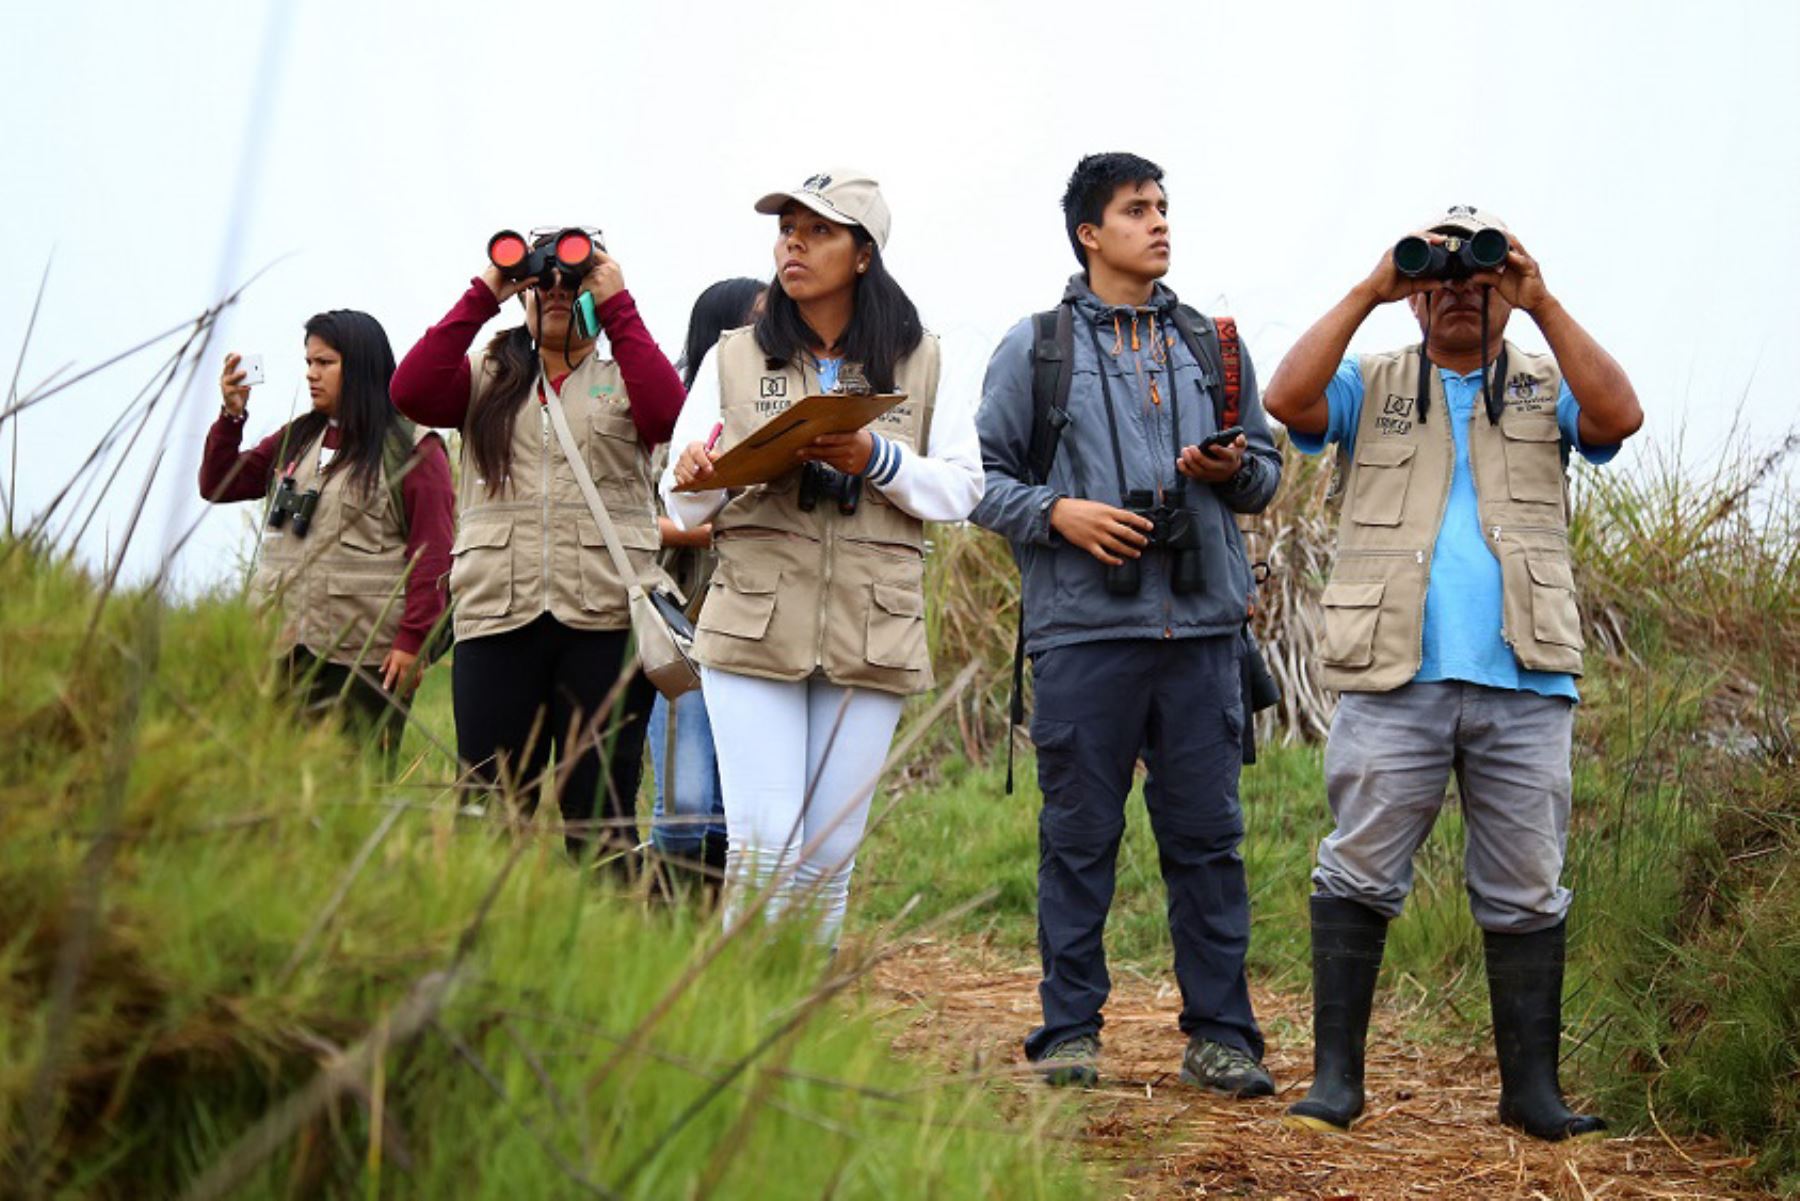 El turismo rural comunitario en Perú permite no solo vivir una experiencia gratificante e inolvidable conociendo, aprendiendo y valorando la cultura y las costumbres de las poblaciones de los destinos que se visitan, sino también es posible apreciar la belleza paisajística y la biodiversidad a través de actividades como la observación de aves. ANDINA/Difusión